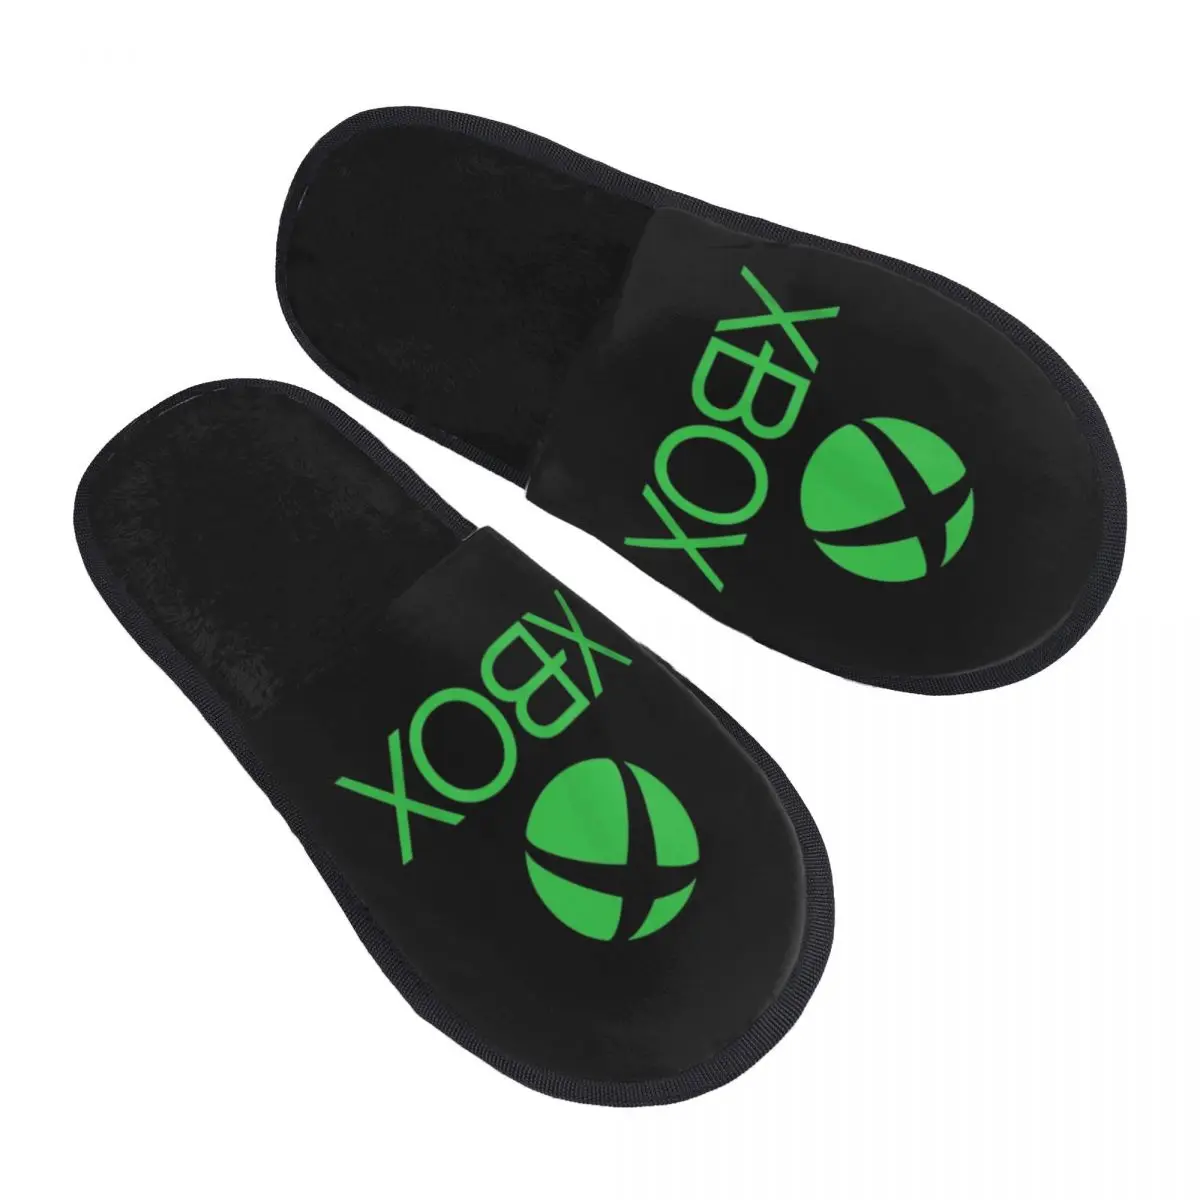 

Домашние тапочки на заказ с логотипом Green X Box, мягкие тапочки из пены с эффектом памяти, удобные теплые тапочки с нескользящей подошвой для видеоигр